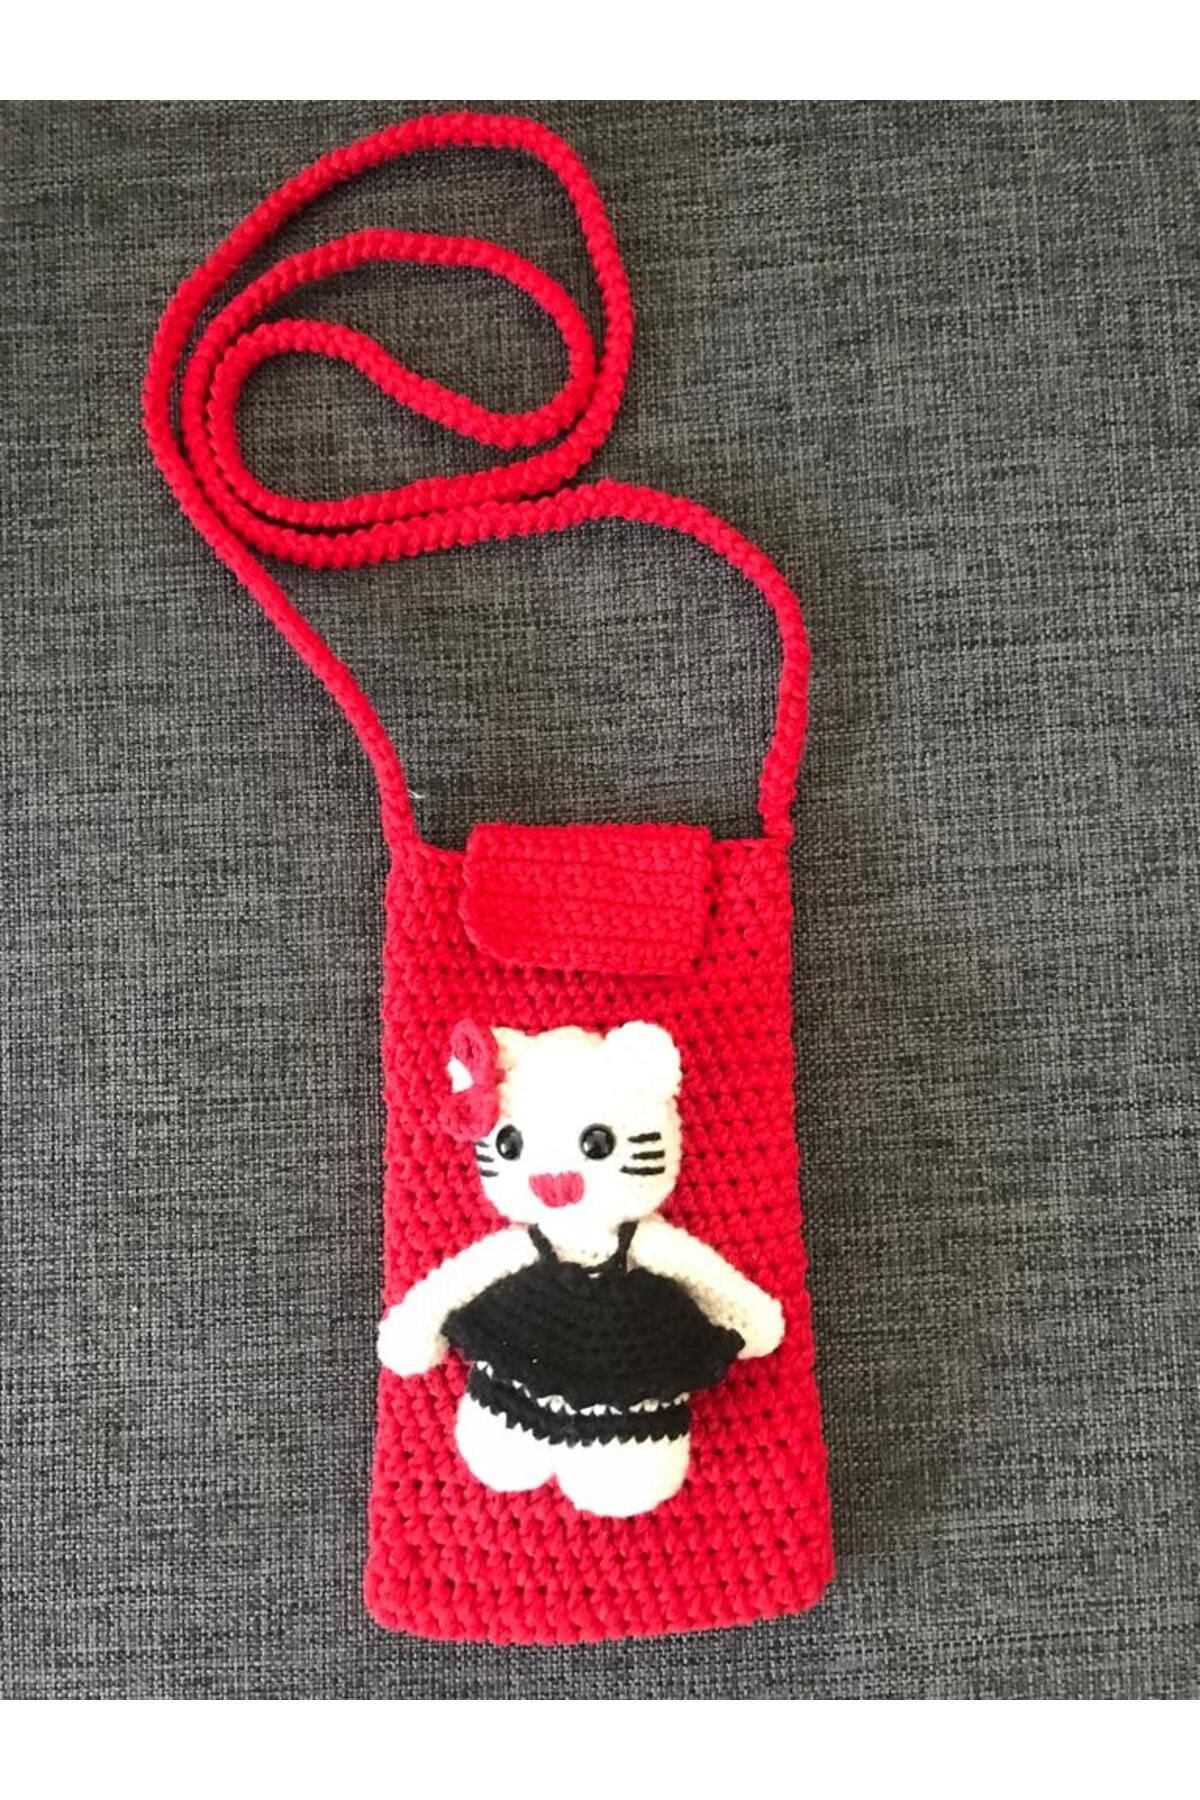 ŞEHR-İ PAZAR Kırmızı renk hello kitty figürlü telefon çantası